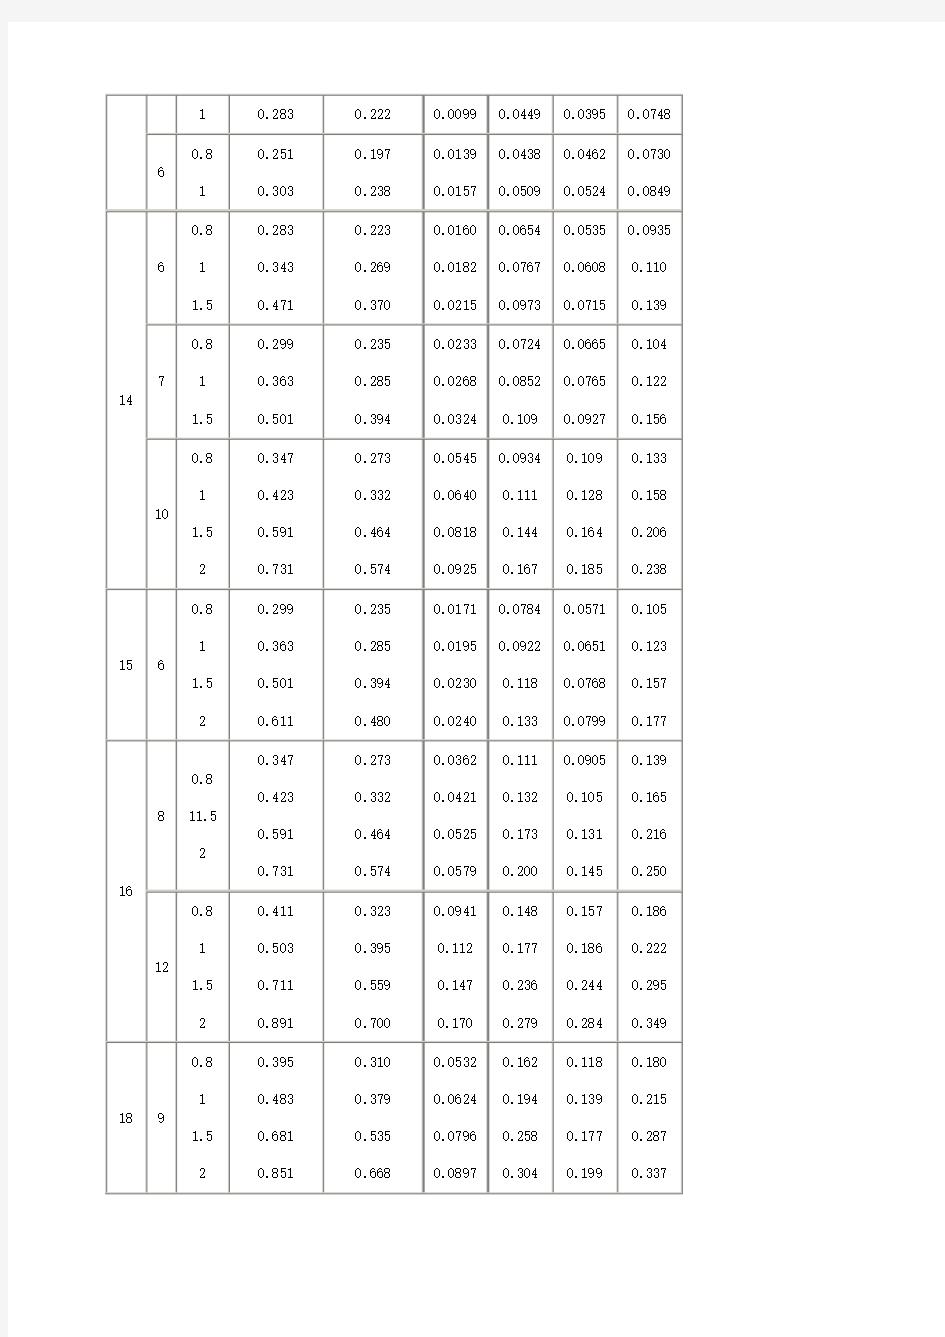 方管矩形管规格及理论重量参考表